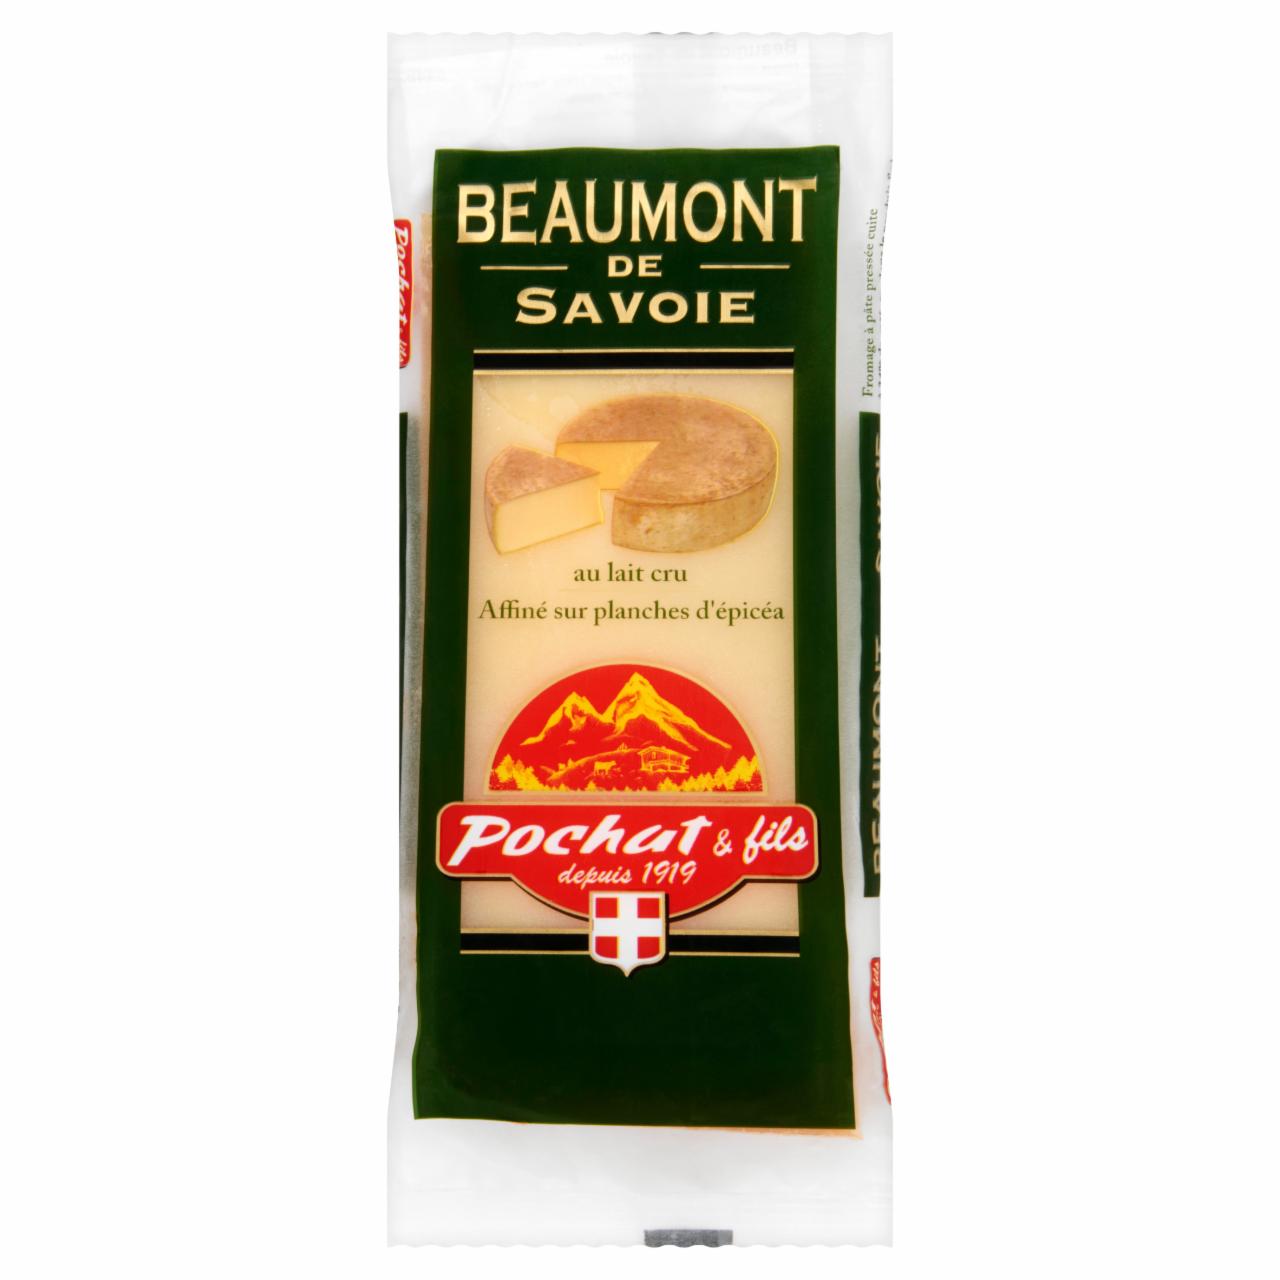 Képek - Pochat & Fils Beaumont de Savoie préselt, kérges, zsíros kemény sajt 200 g